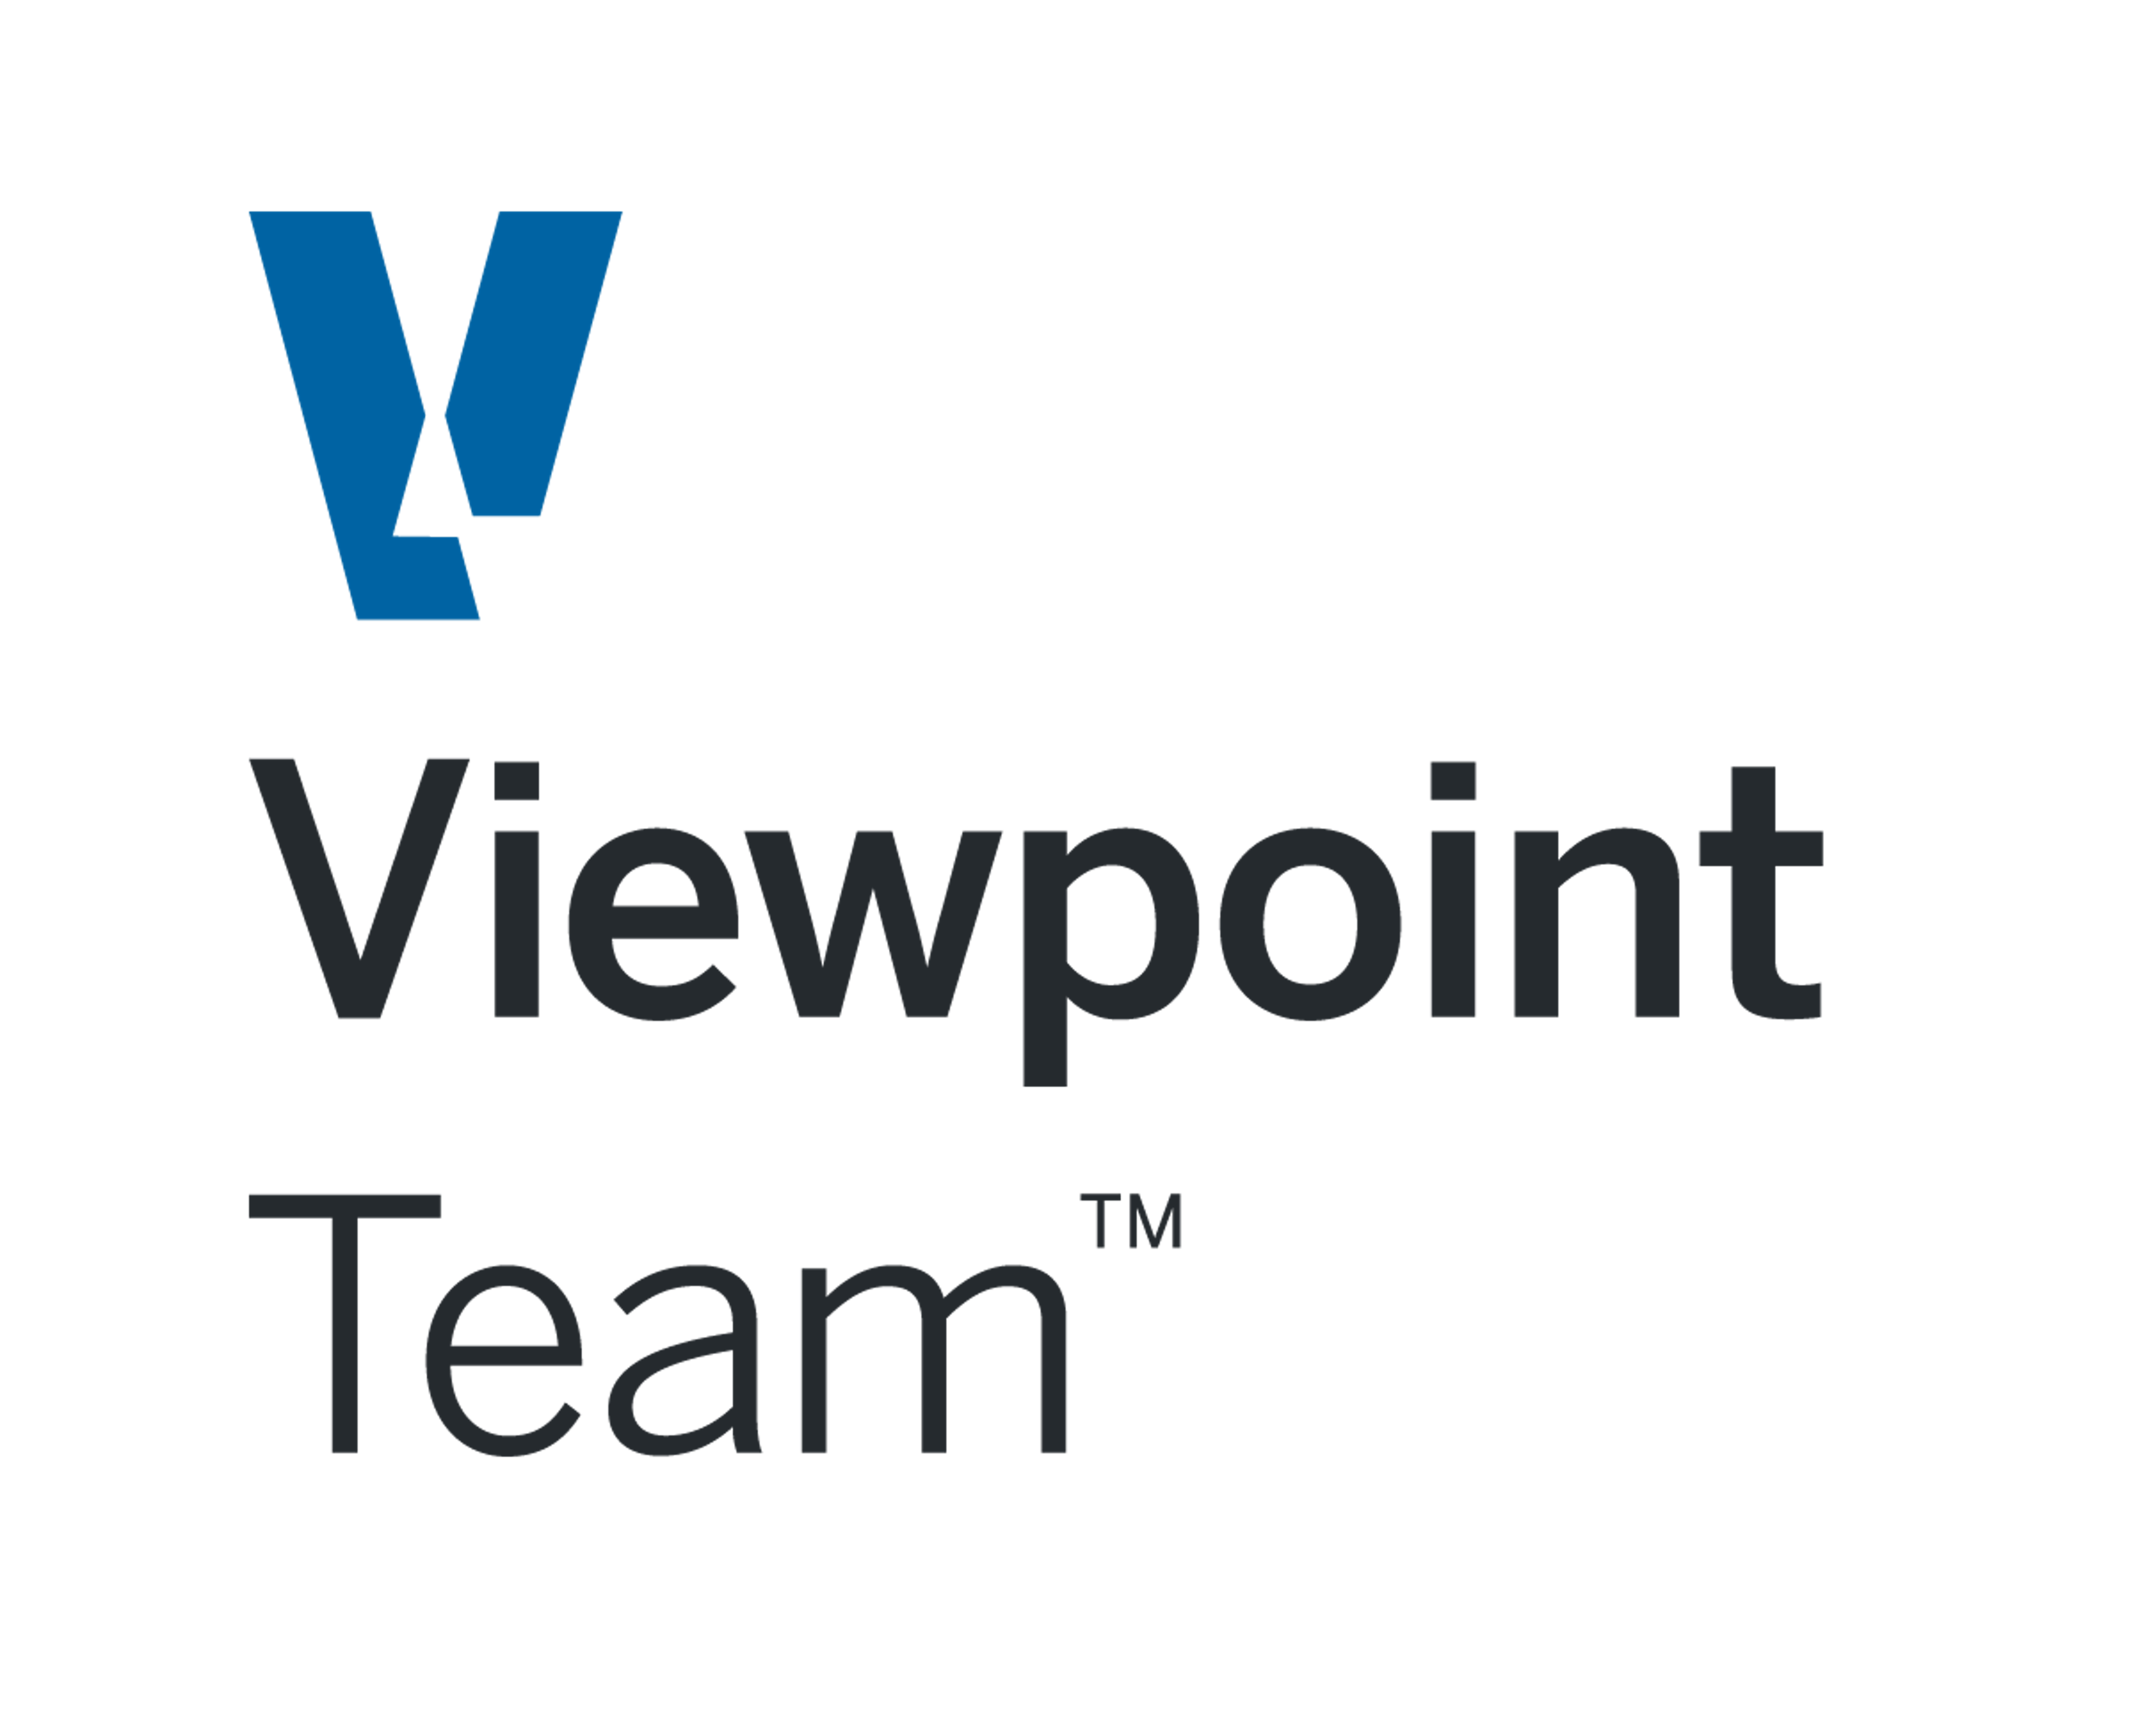 Viewpoint Team Logo